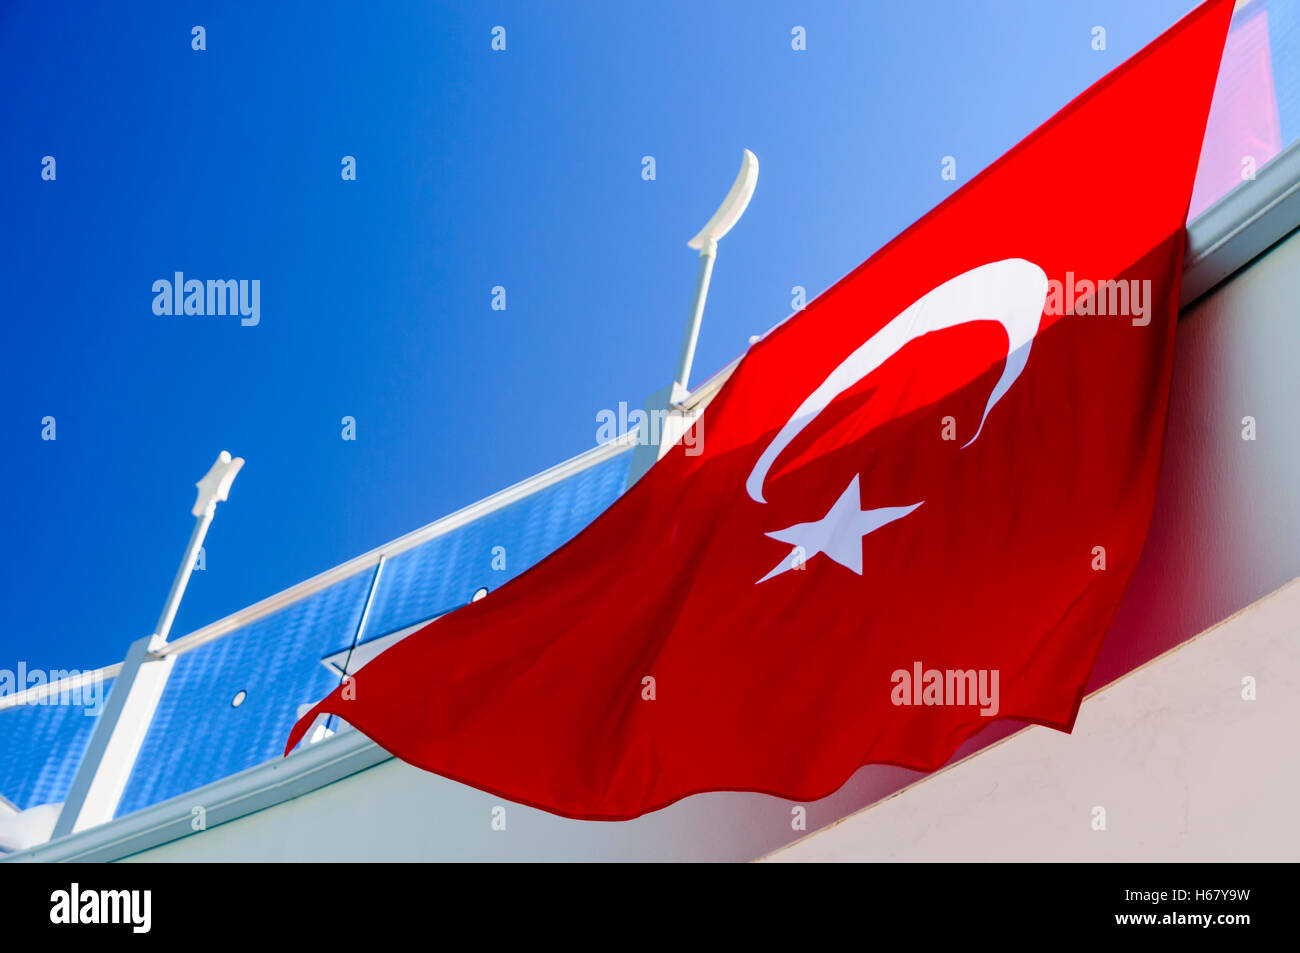 Die Turkische Flagge Mit Dem Halbmond Mond Und Venus Stern Auf Rotem Grund Hangt Von Ihrem Balkon Aus Stockfotografie Alamy